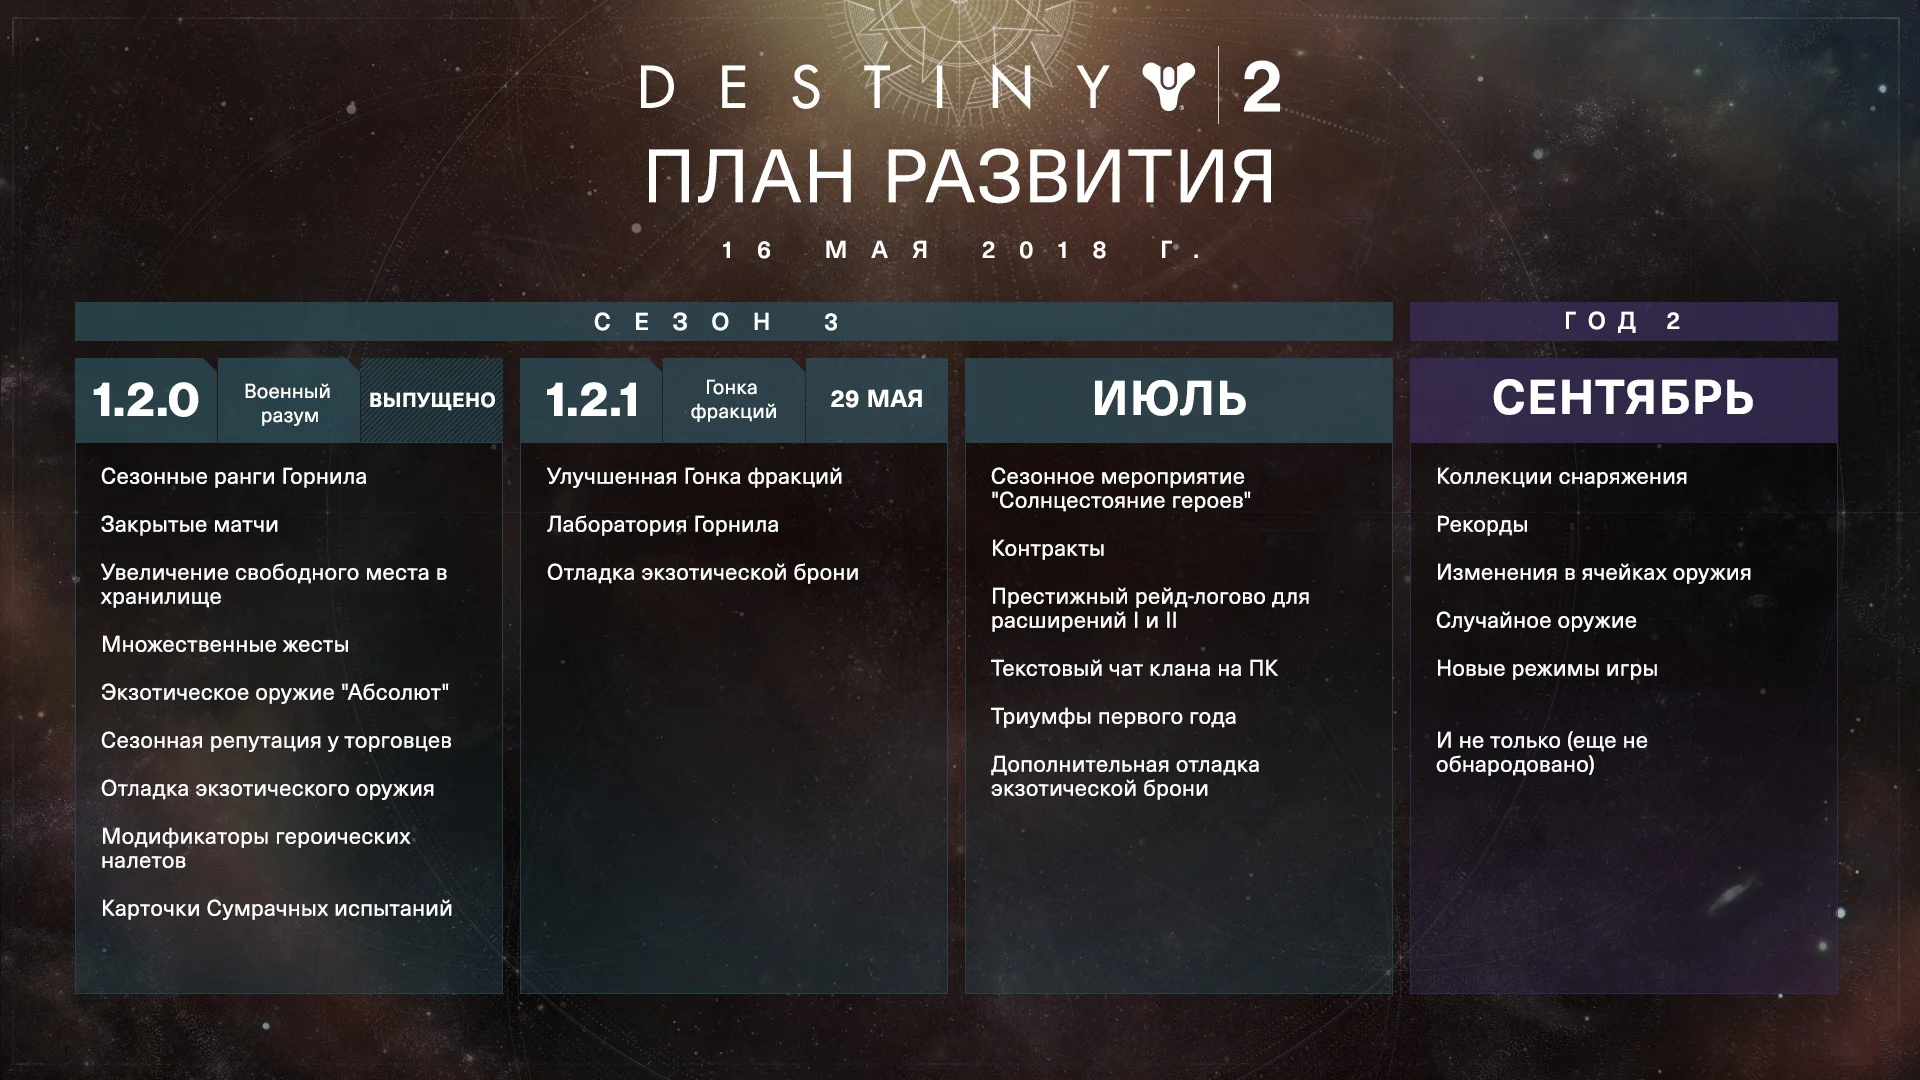 В Destiny 2 появится «экспериментальный PvP-контент» - фото 2